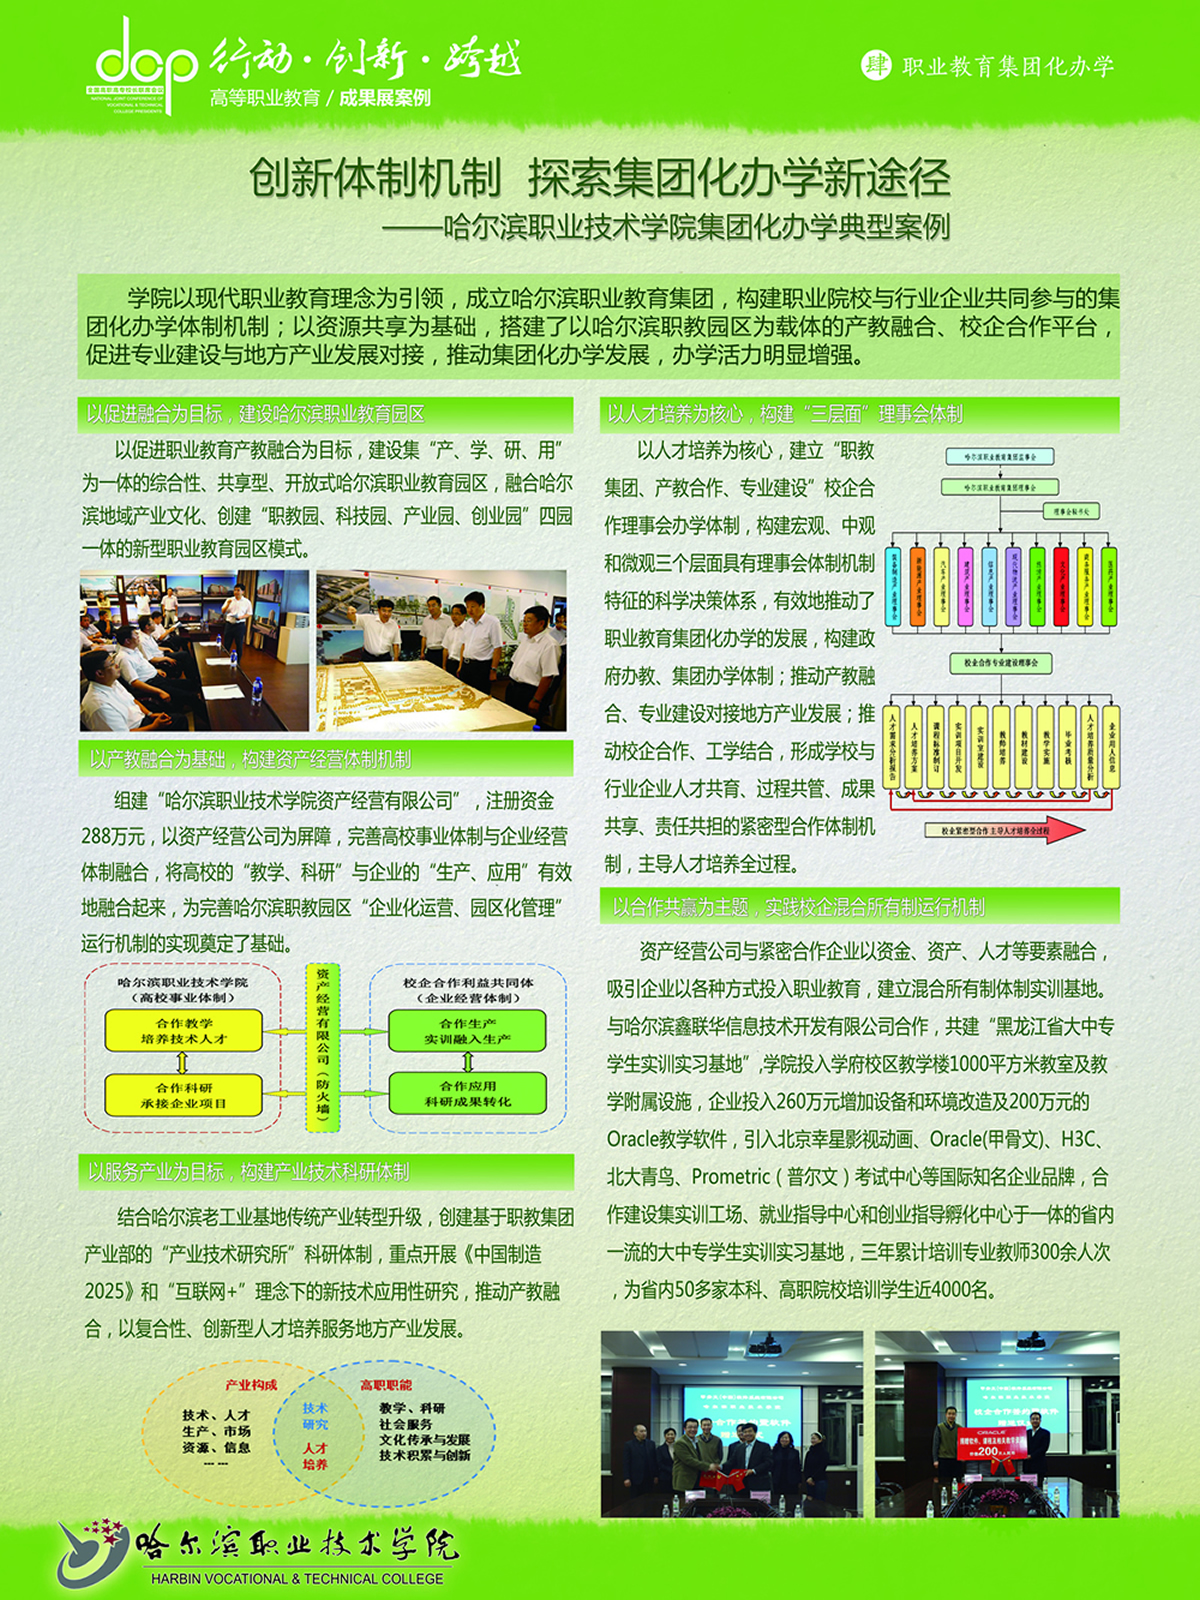 7哈尔滨职业技术学院+宣传展板+职业教育集团化办学1.jpg